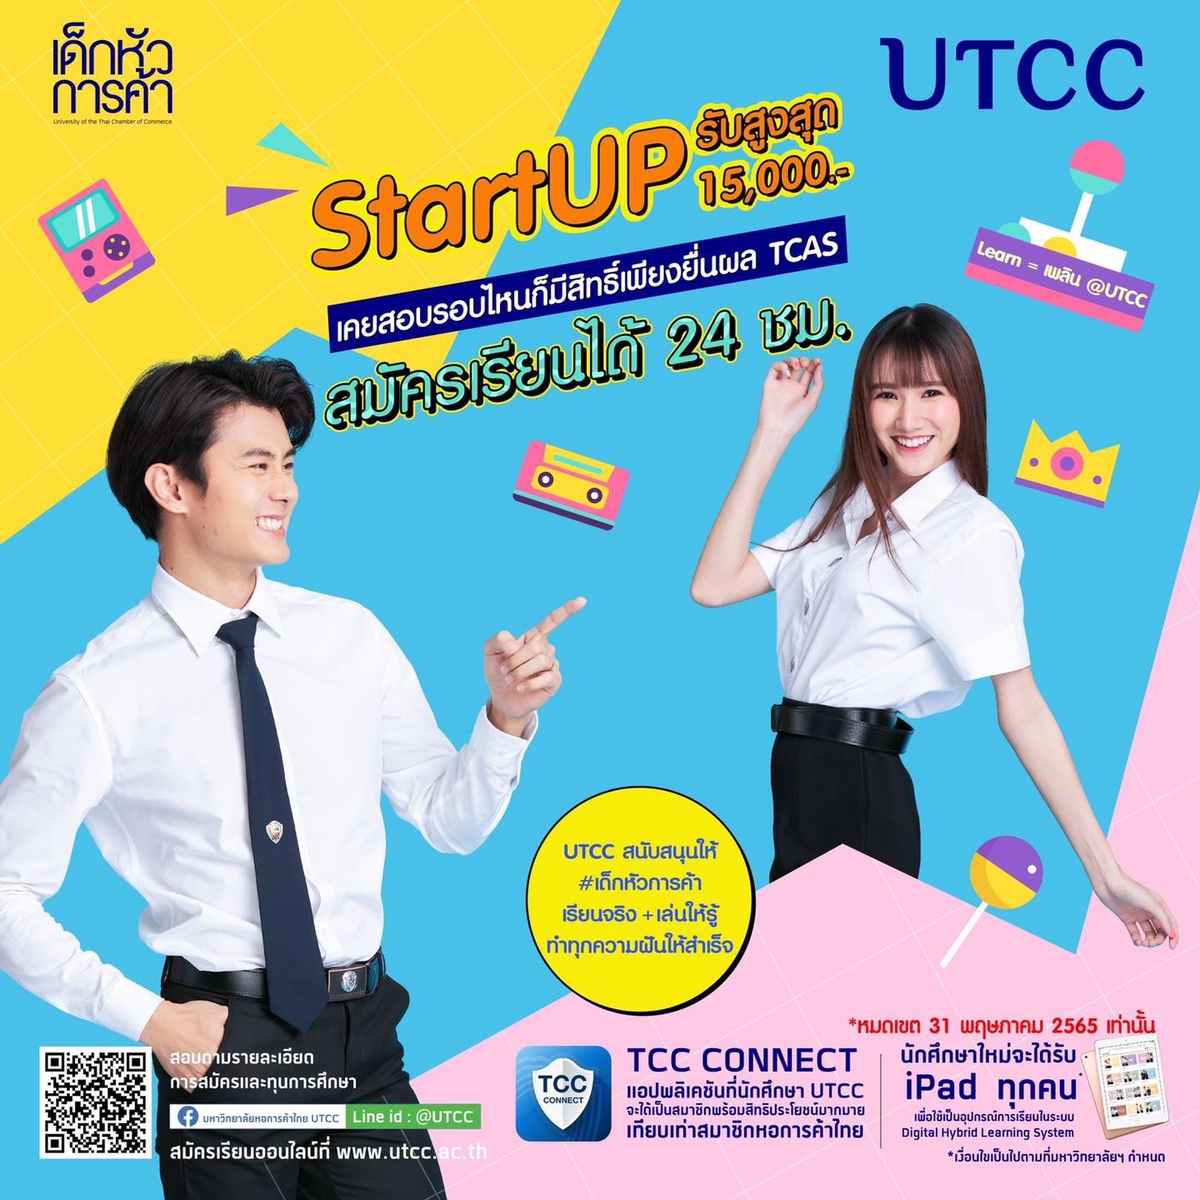 พร้อมปั้นให้ทุกคนประสบความสำเร็จ มหาวิทยาลัยหอการค้าไทย UTCC